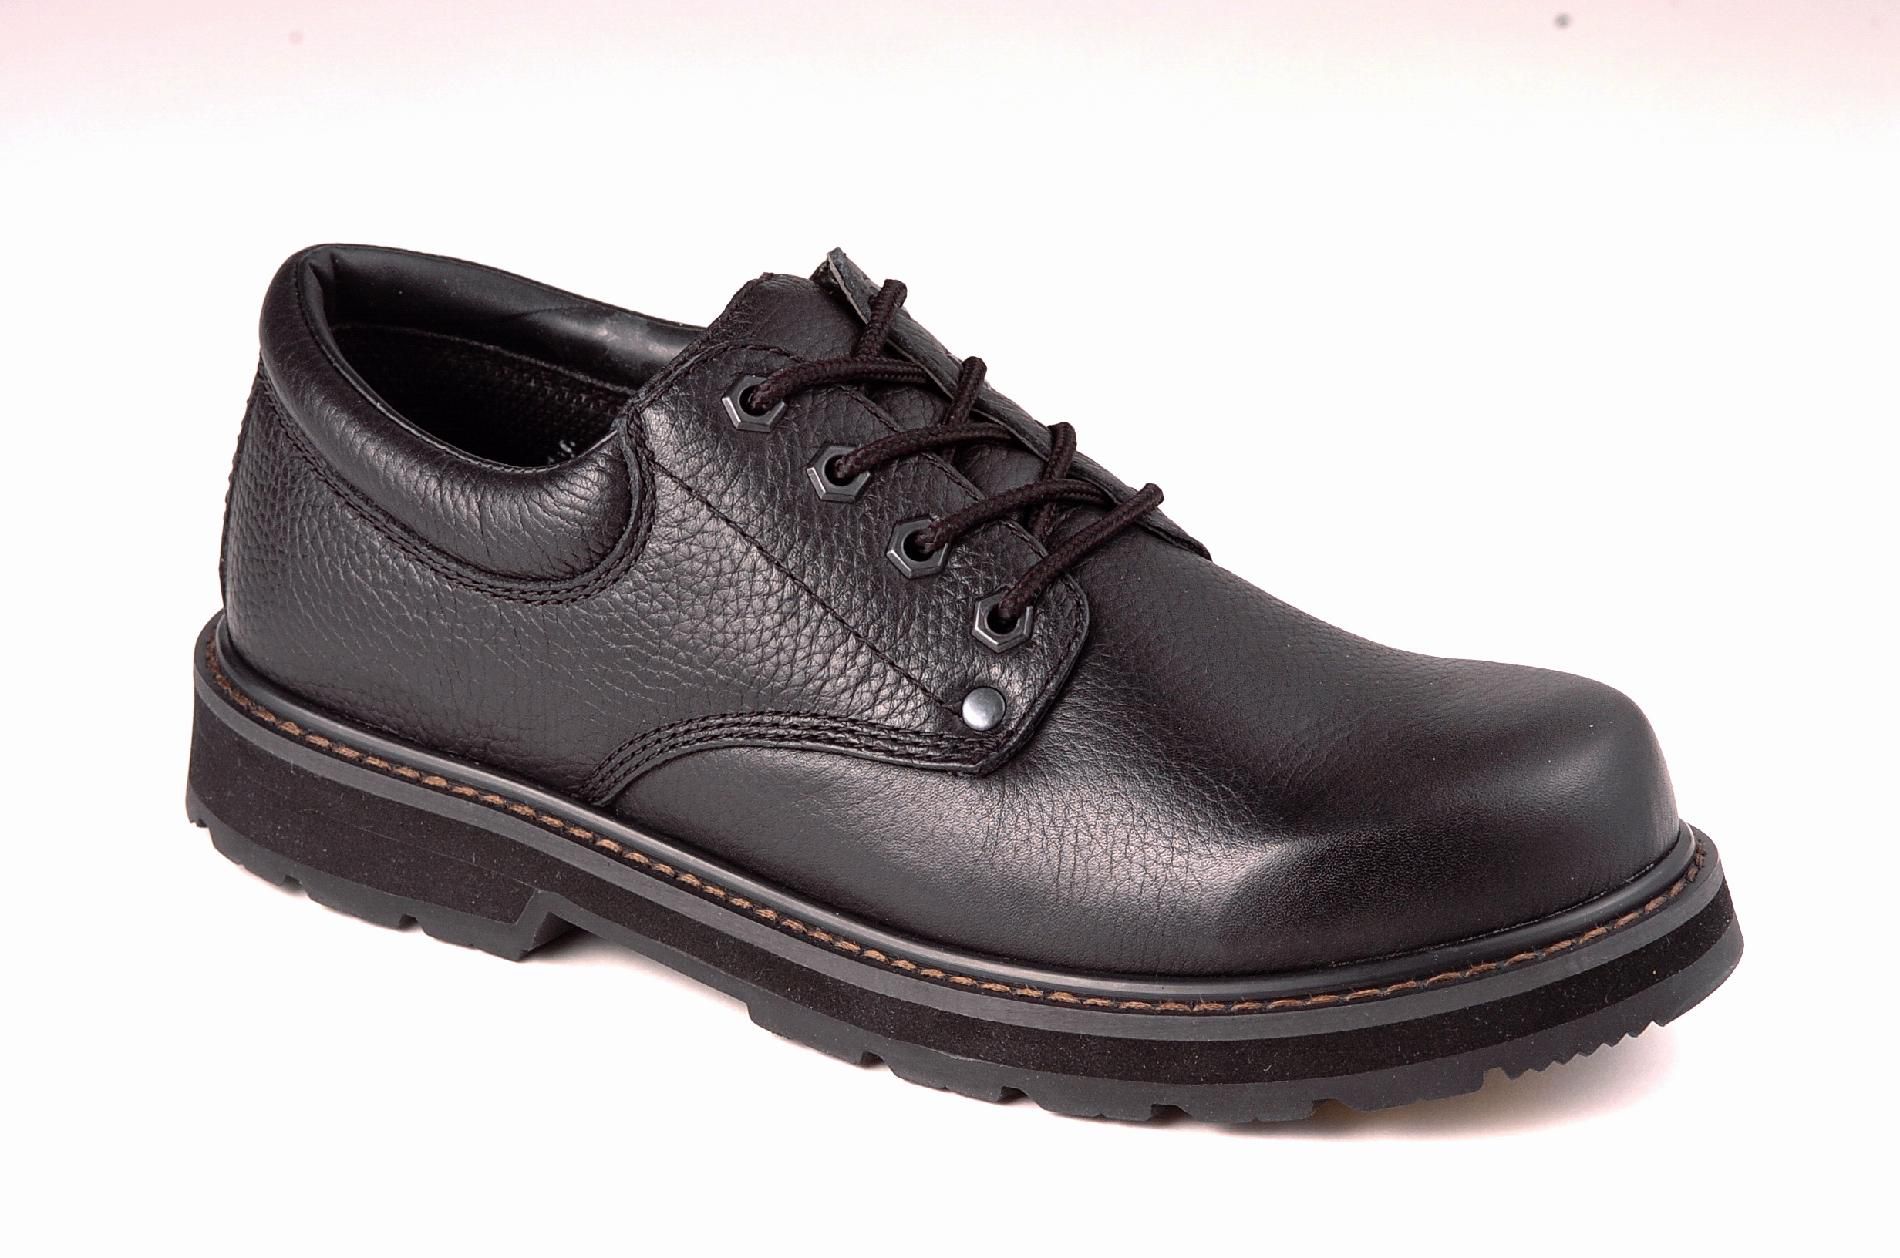 Keen Work Boots: Reviews Dr. Scholl's Work Men's Harrington Work Boot ...